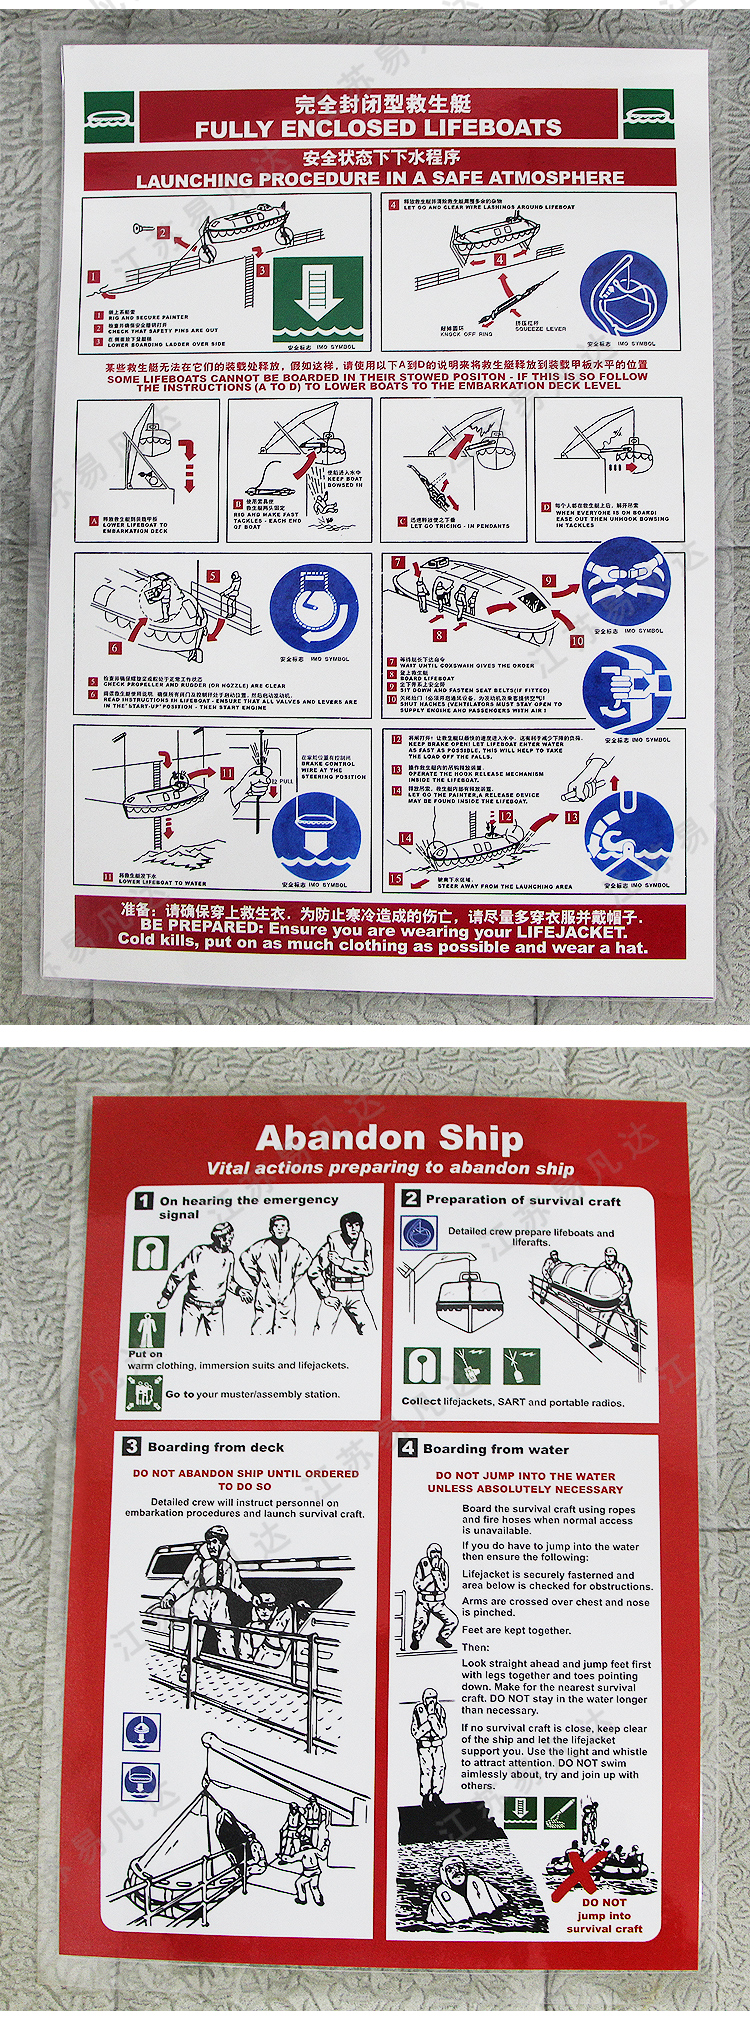 船用海报示意图、船用安全训练海报、救生艇救生筏释放步骤、救生艇自由降落程序